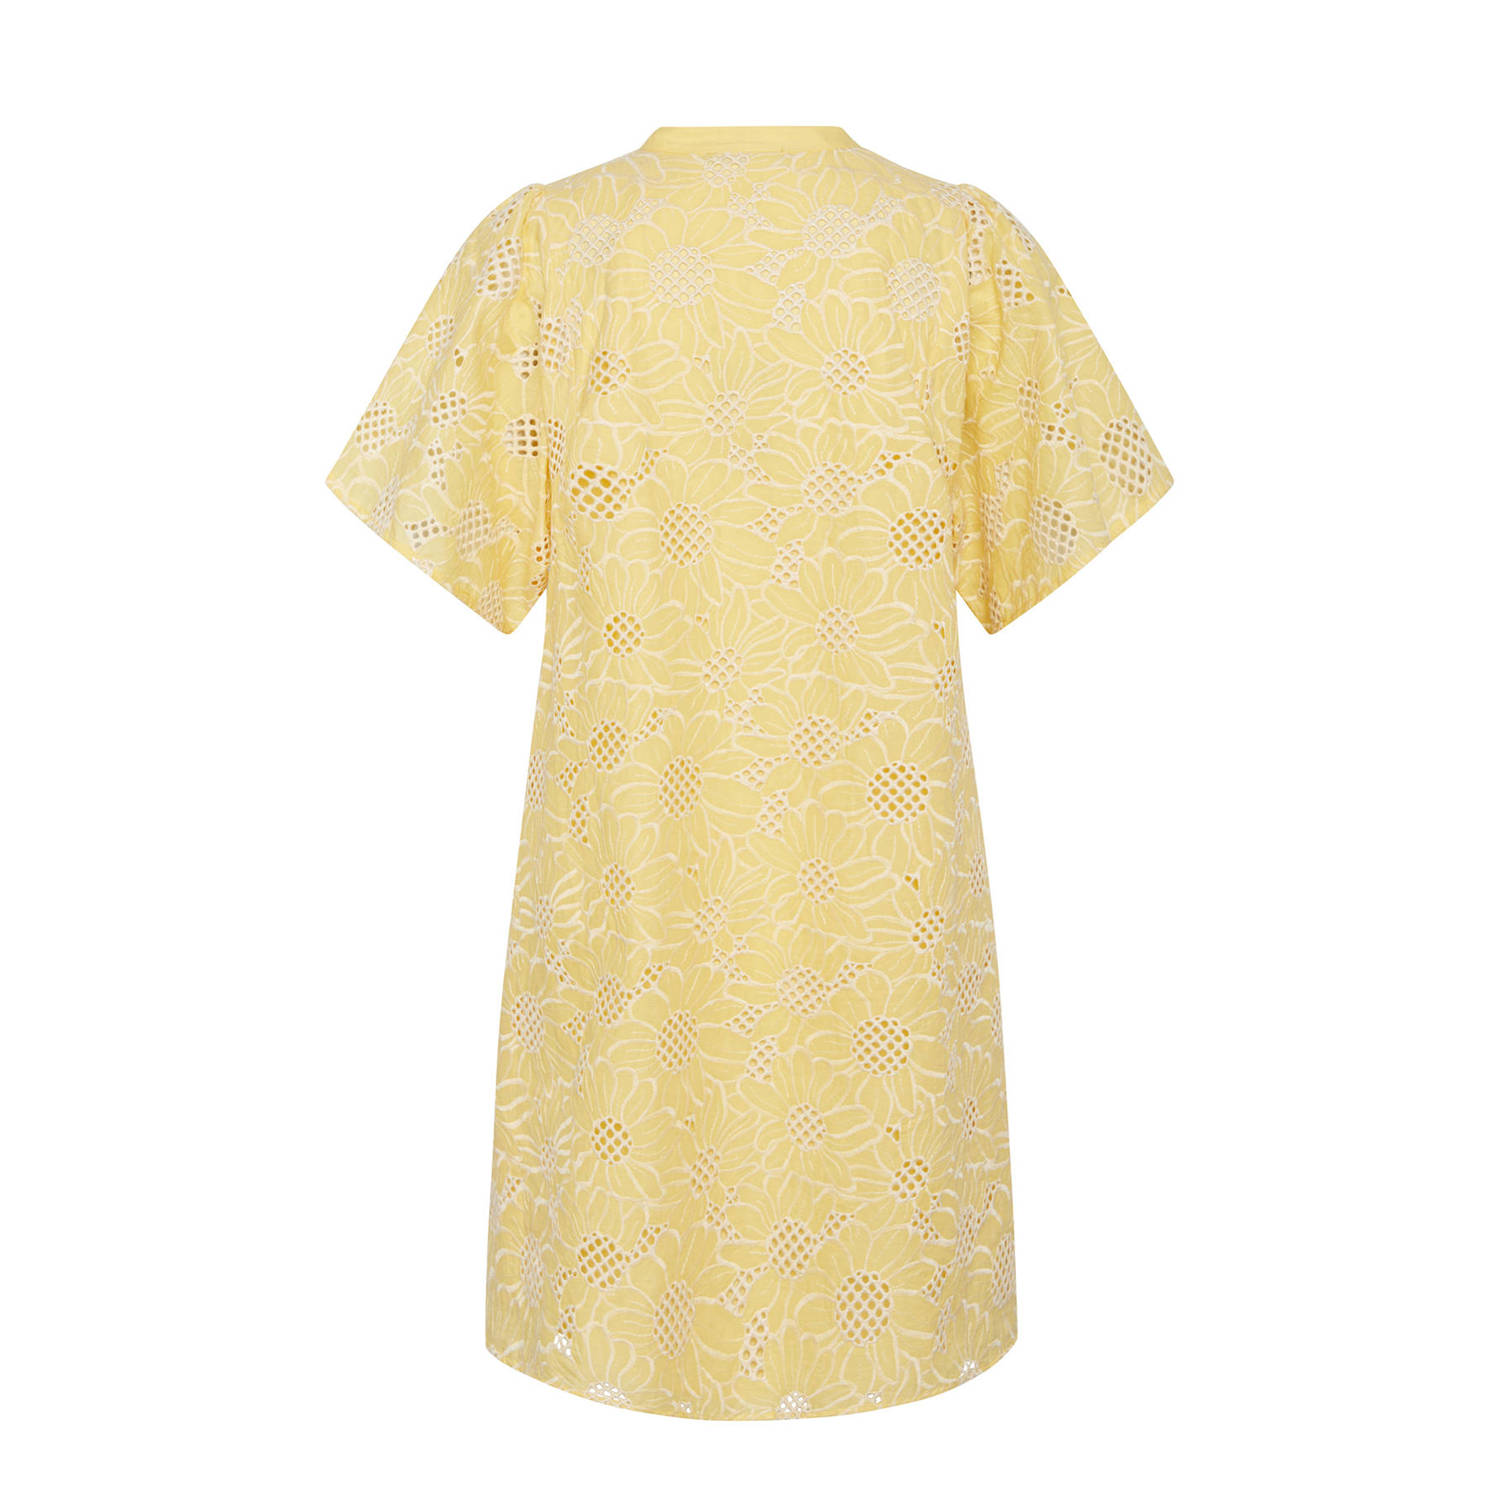 Bruuns Bazaar gebloemde jurk geel wit